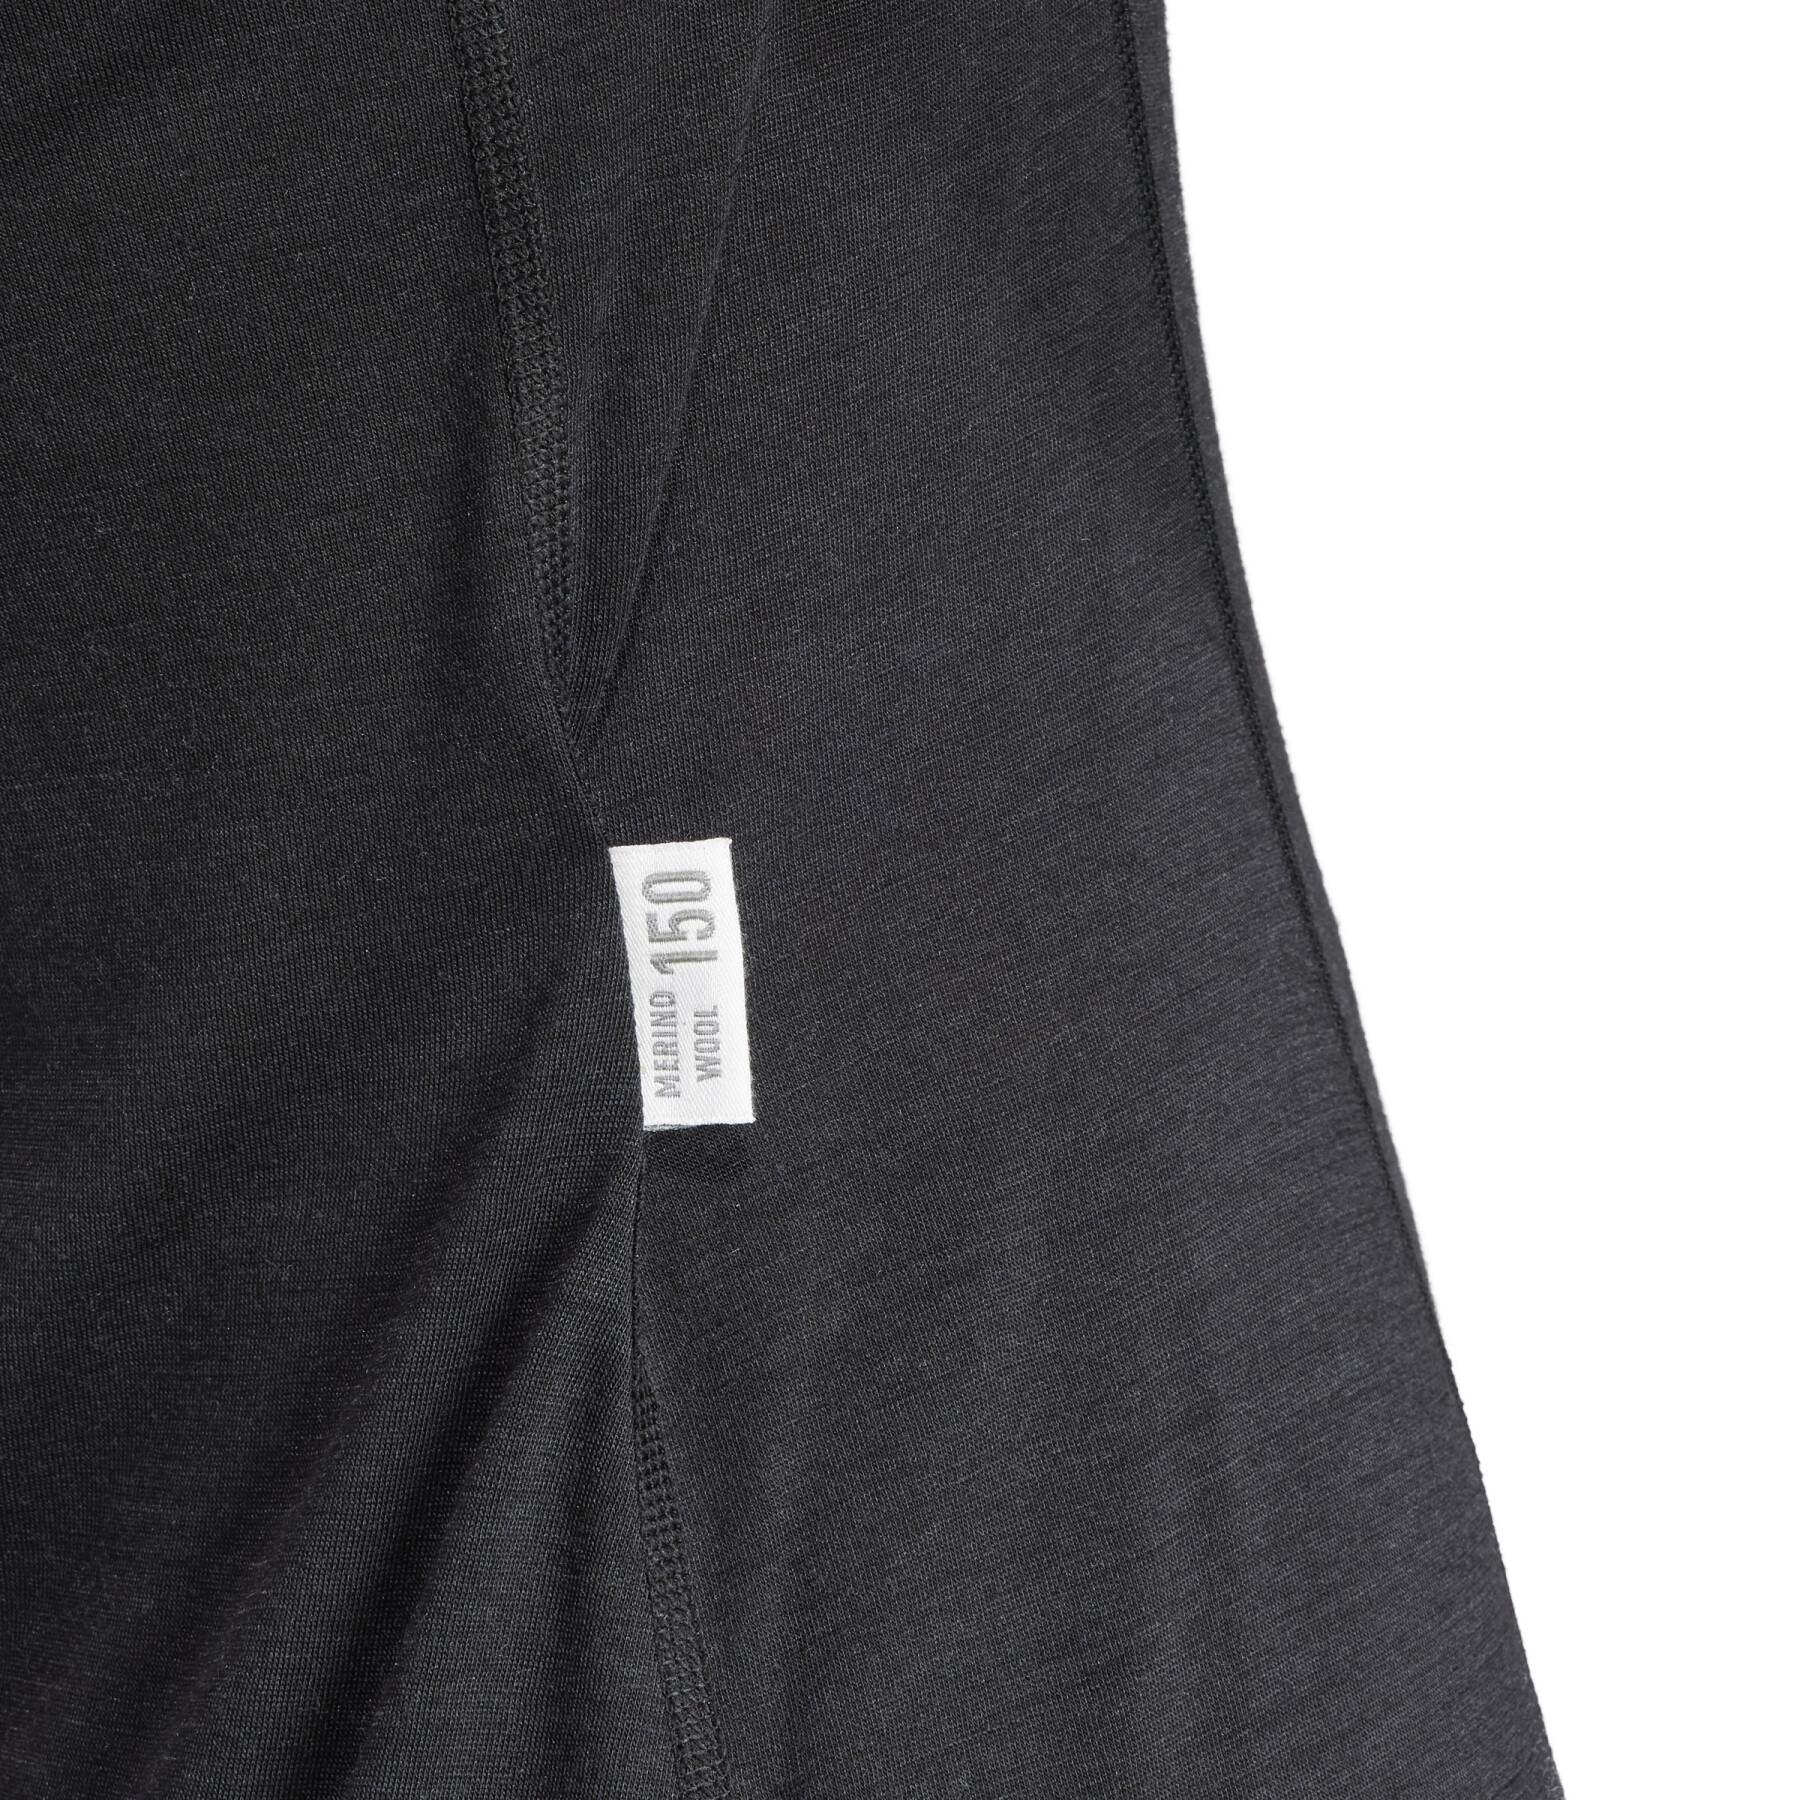 Camisola interior de manga comprida feminina adidas Xperior Merino 150